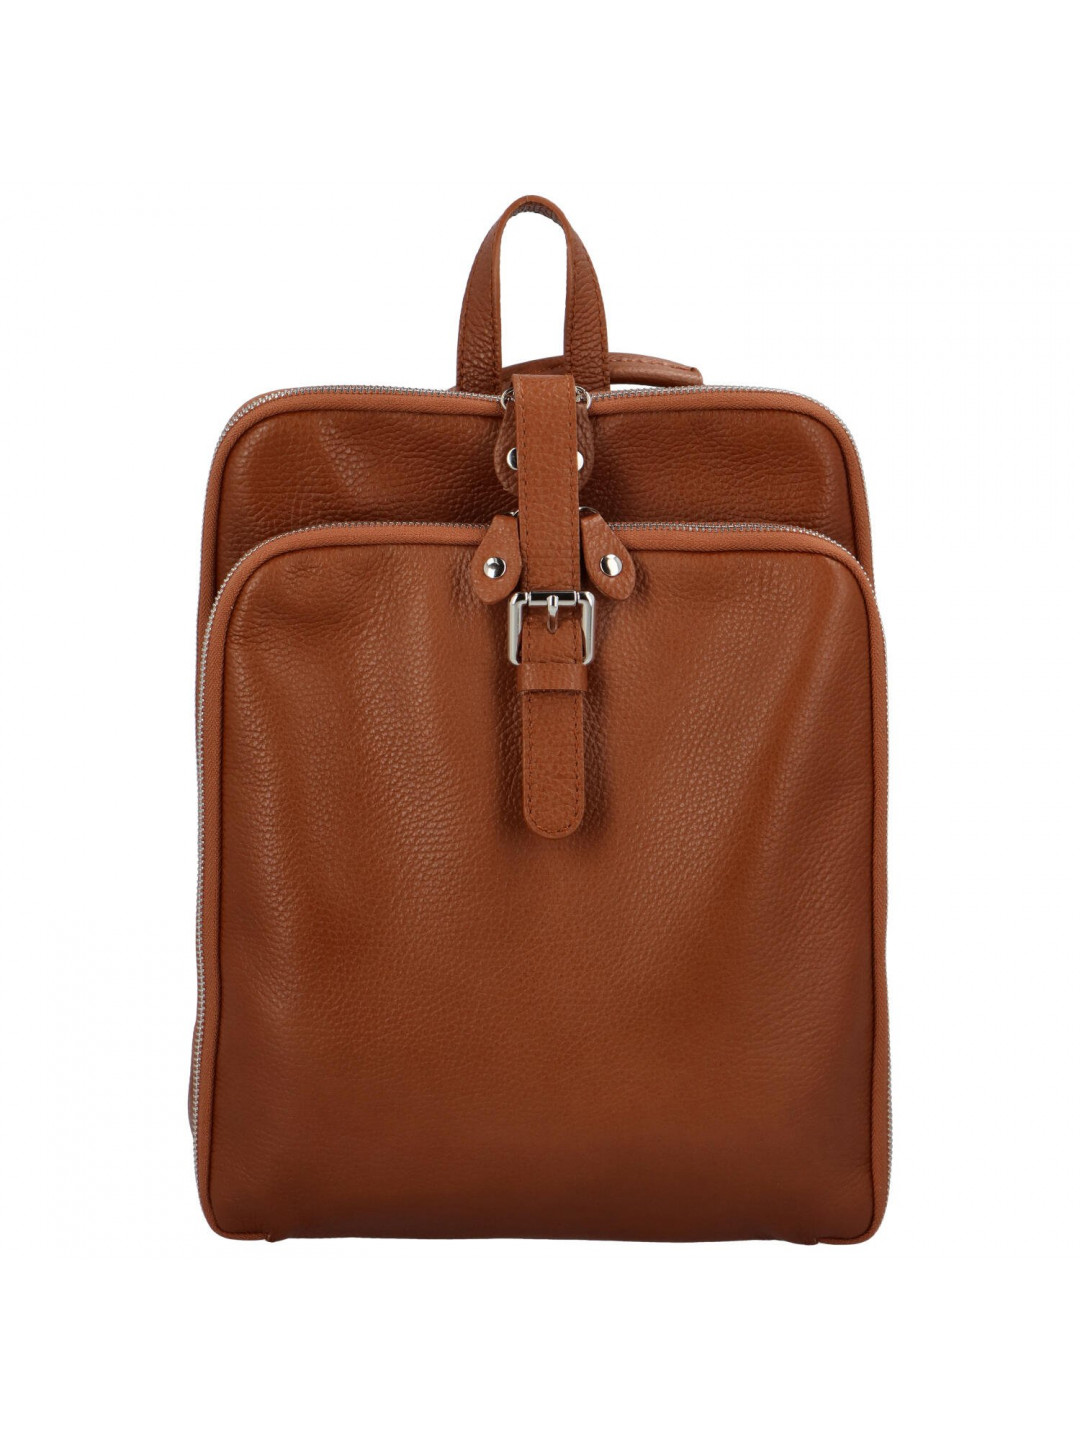 Trendový dámský kožený kabelko-batoh Giada hnědý